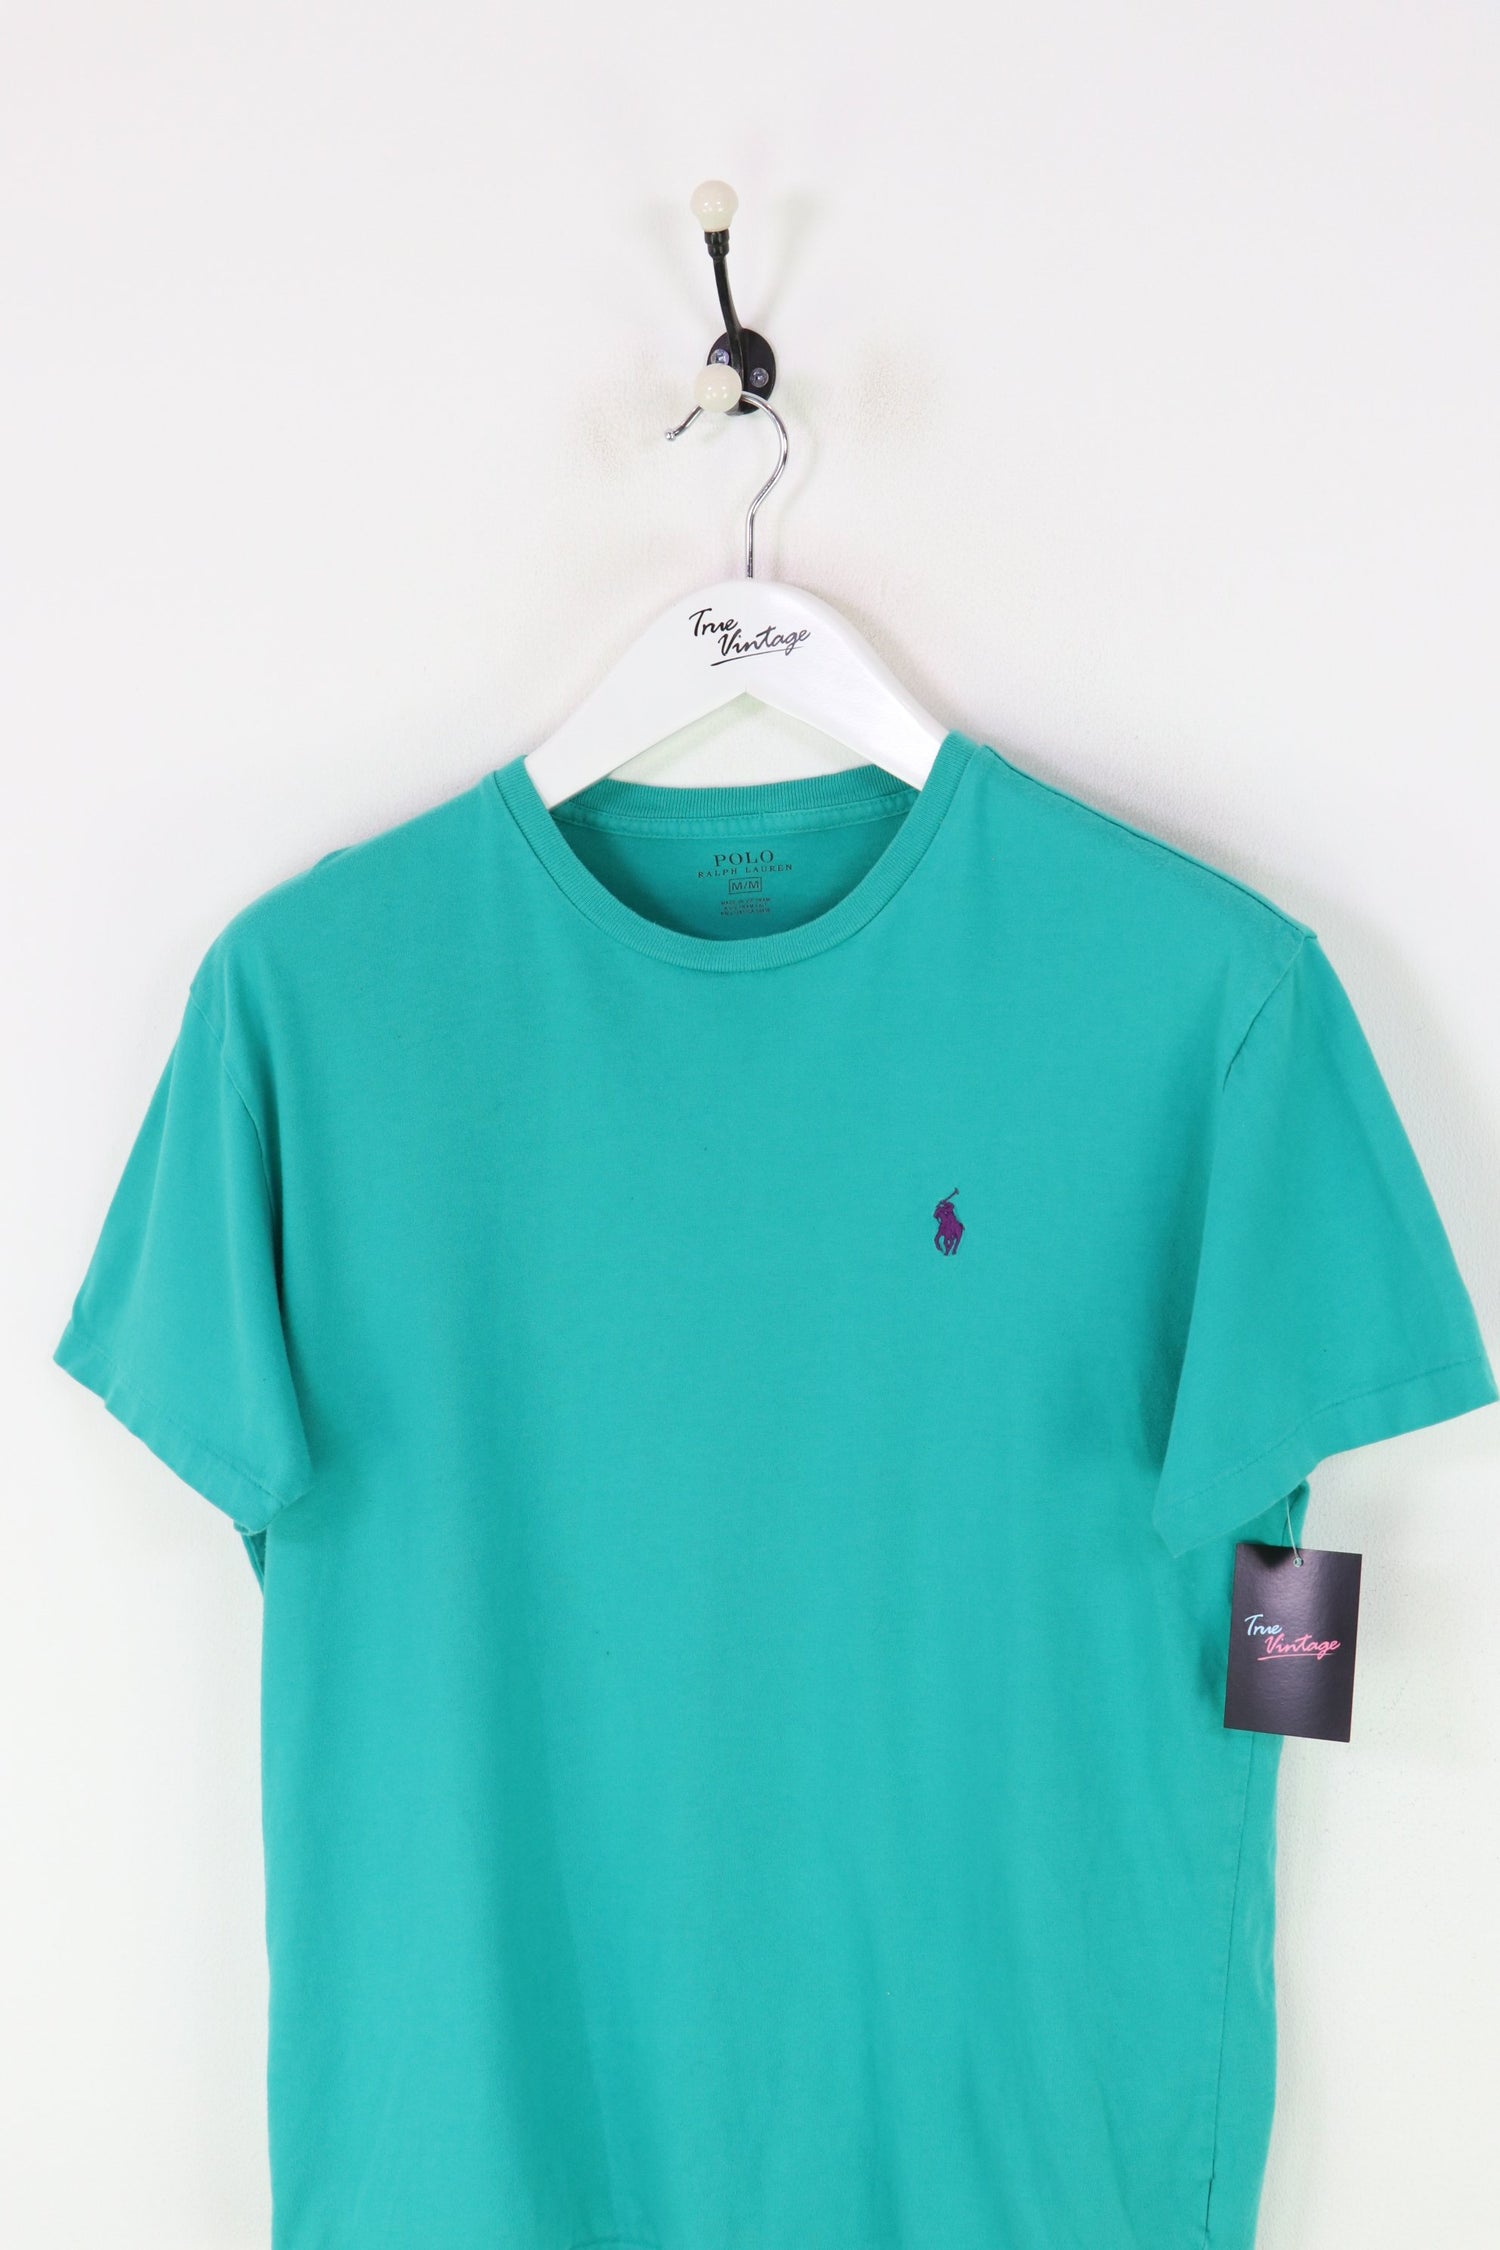 Ralph Lauren T-shirt Green Small